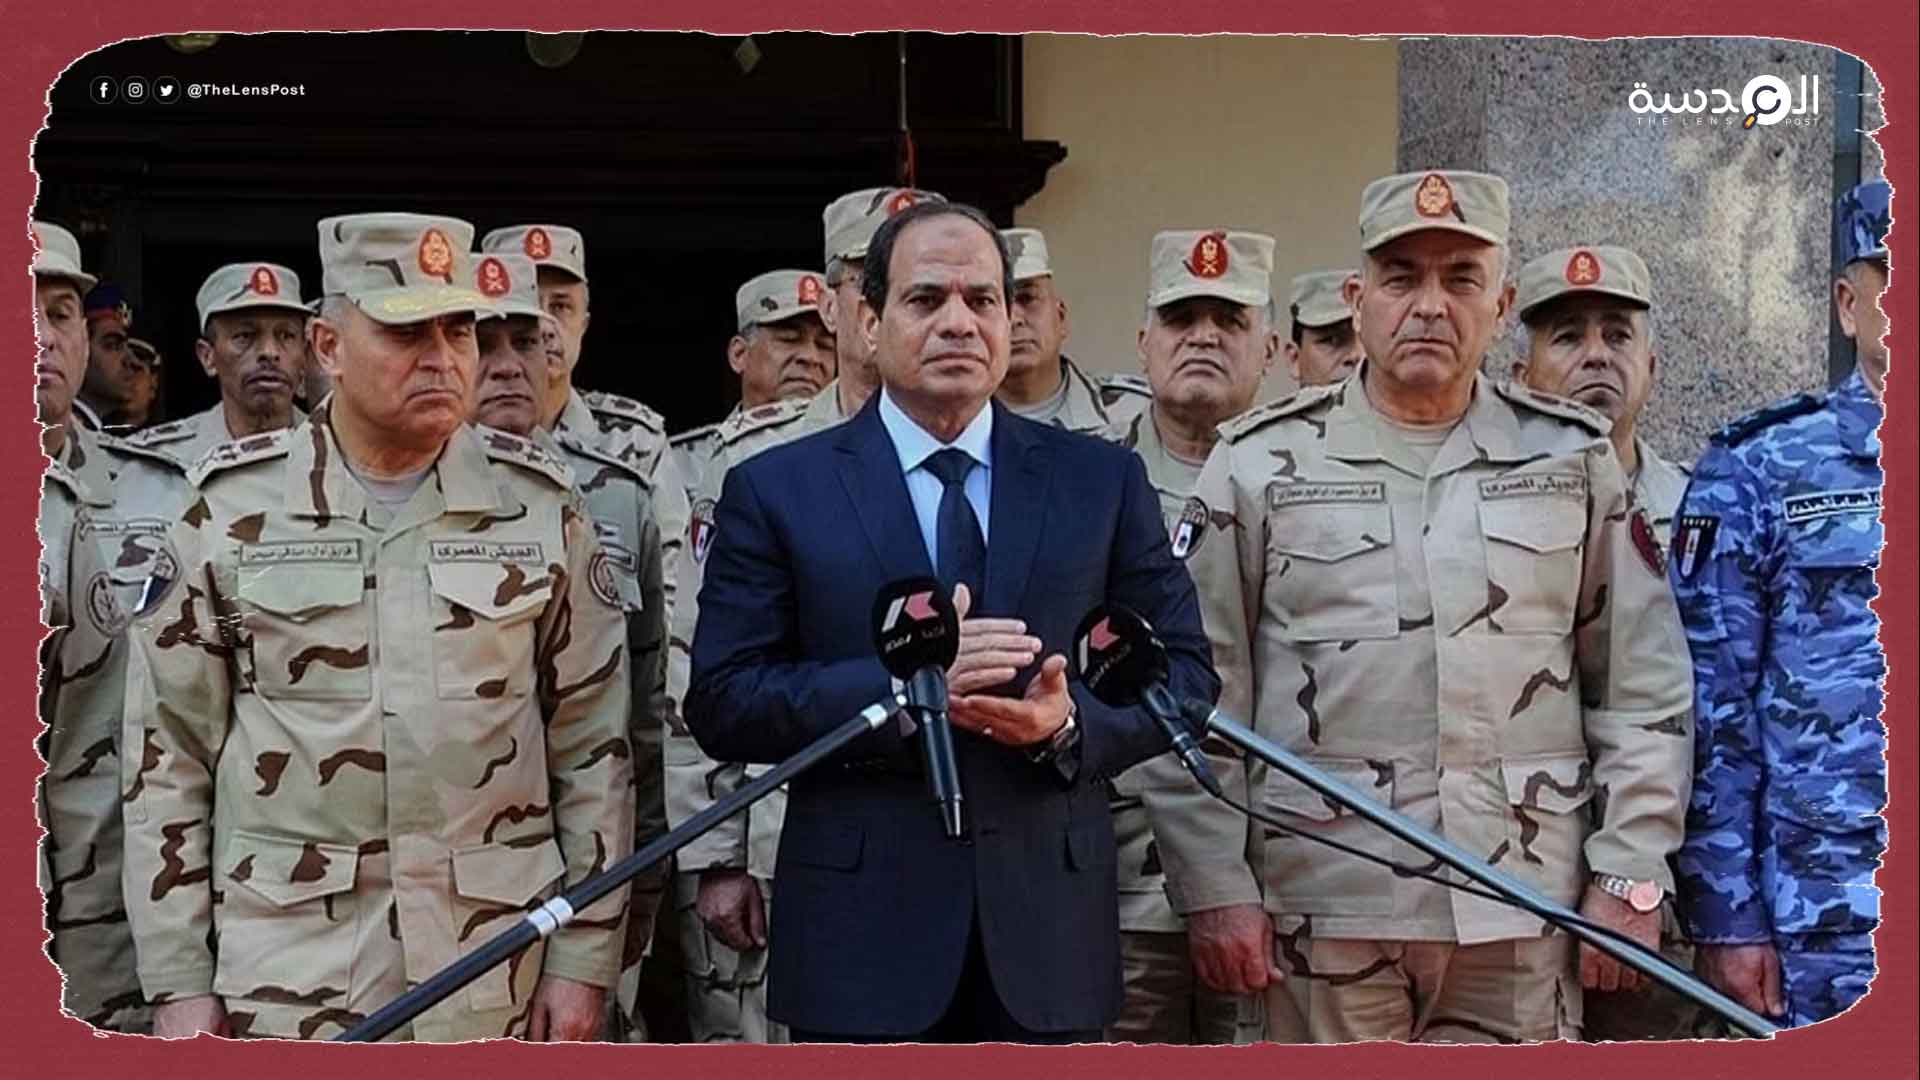 غضب داخل المخابرات.. السيسي يقيل 8 من قادة المخابرات الحربية